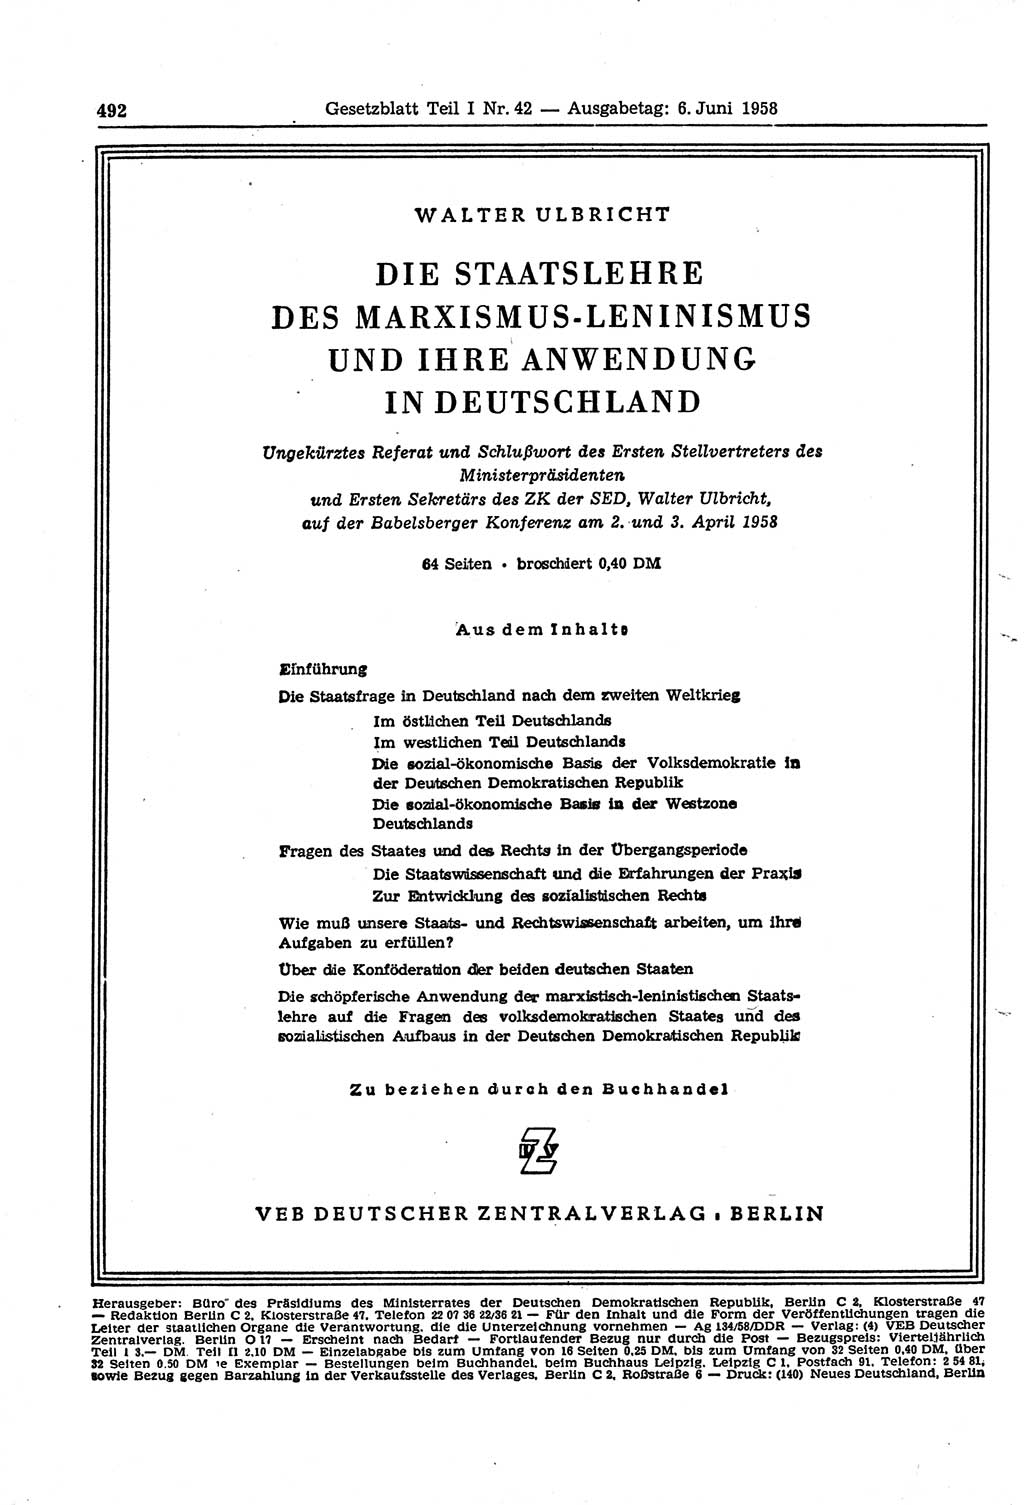 Gesetzblatt (GBl.) der Deutschen Demokratischen Republik (DDR) Teil Ⅰ 1958, Seite 492 (GBl. DDR Ⅰ 1958, S. 492)